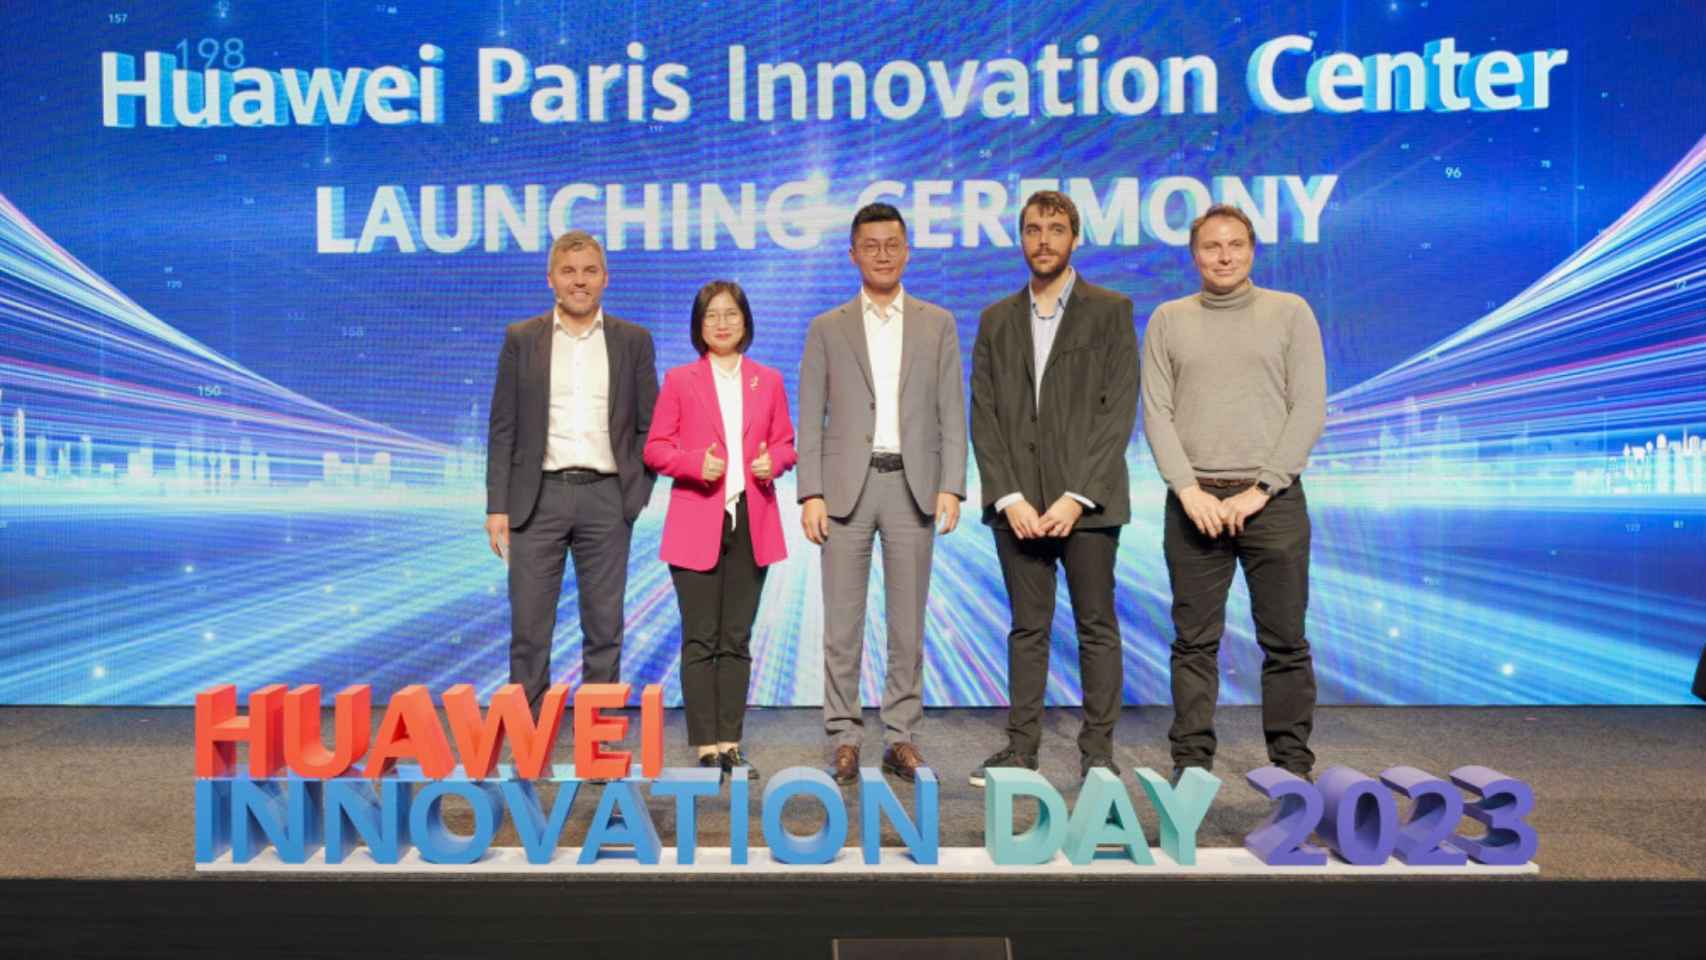 Un instante durante la ponencia en la que se anunció la apertura del centro de innovación de Huawei en París.